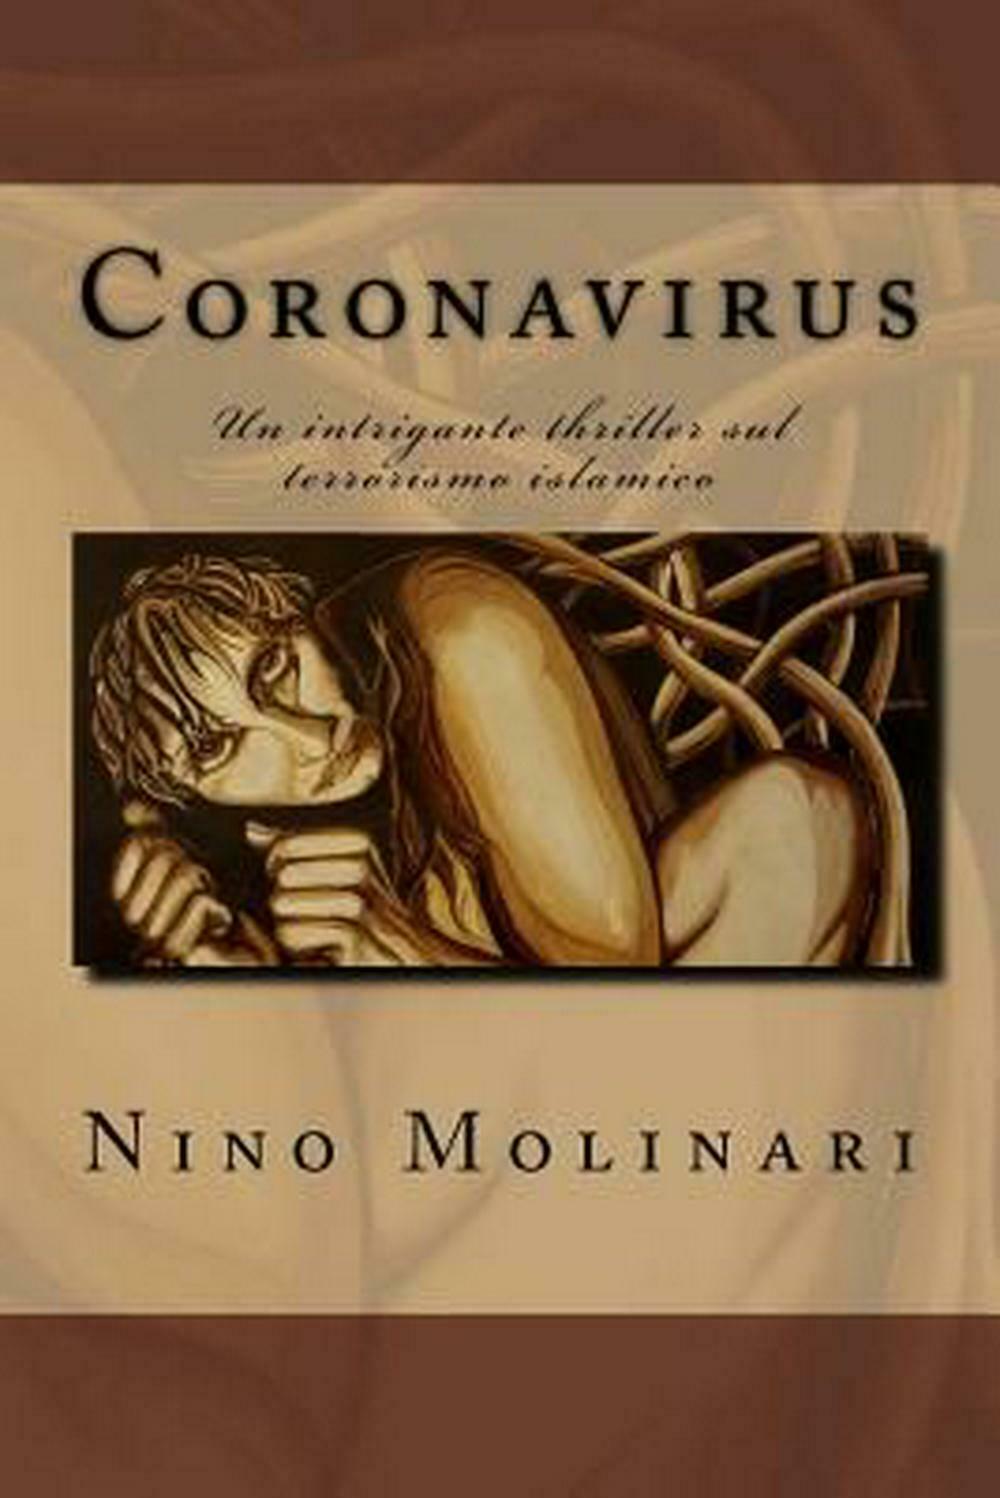 Su un romanzo di Nino Molinari dal titolo “Coronavirus” uscito nel 2015…